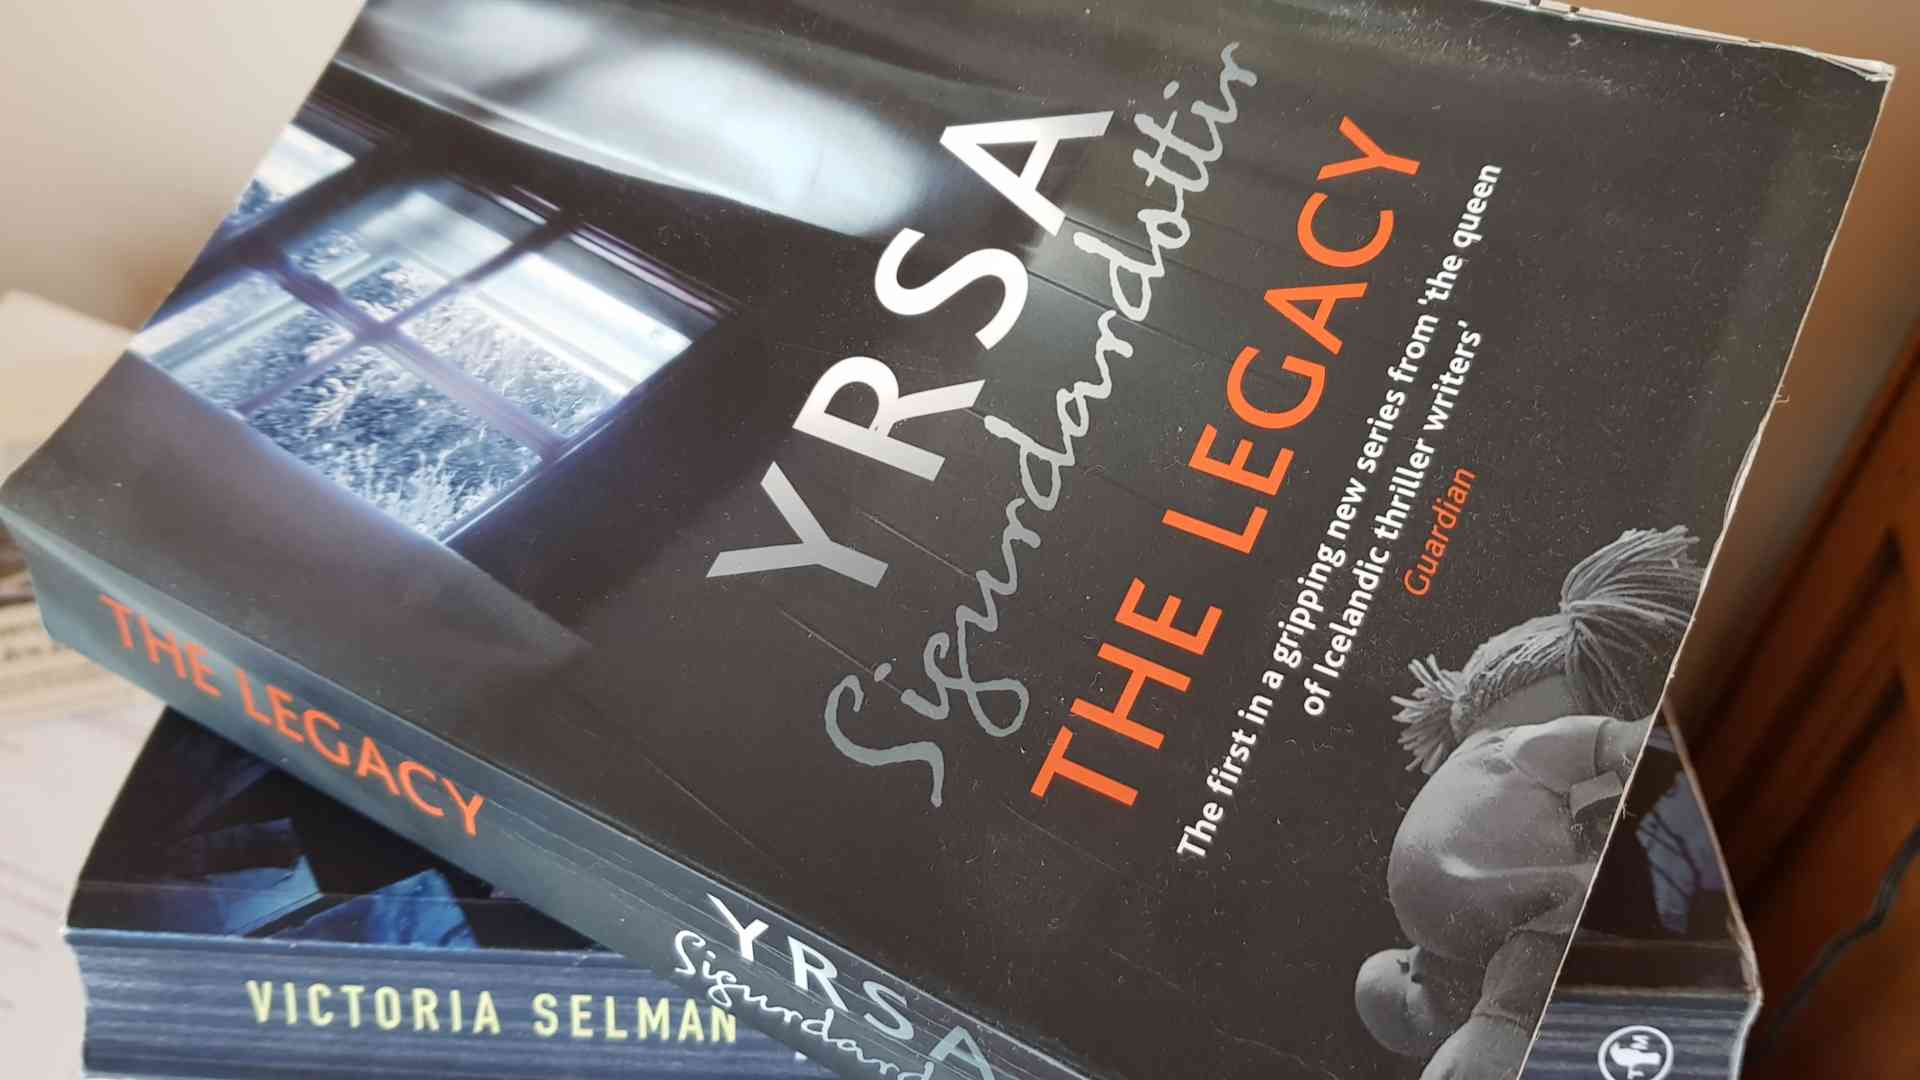 The Legacy (Arvet), av Yrsa Sigurdardottir